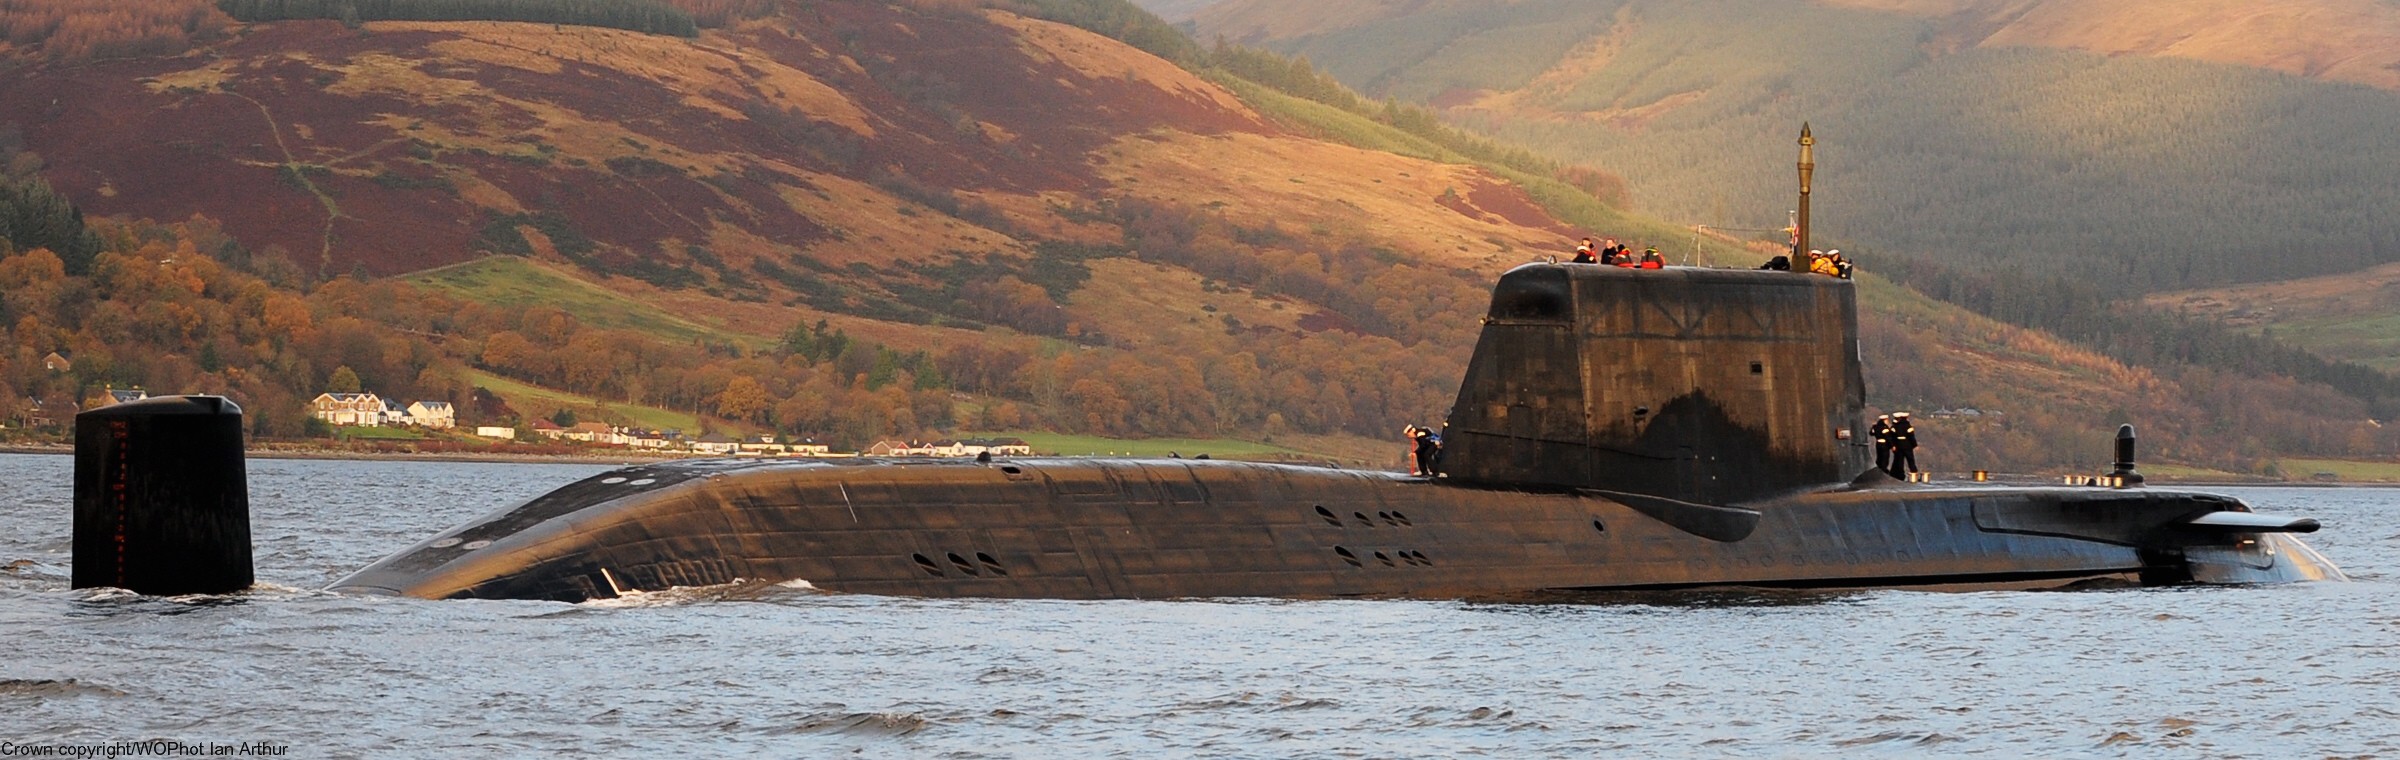 s119 hms astute s-119 attack submarine ssn hunter killer royal navy 09